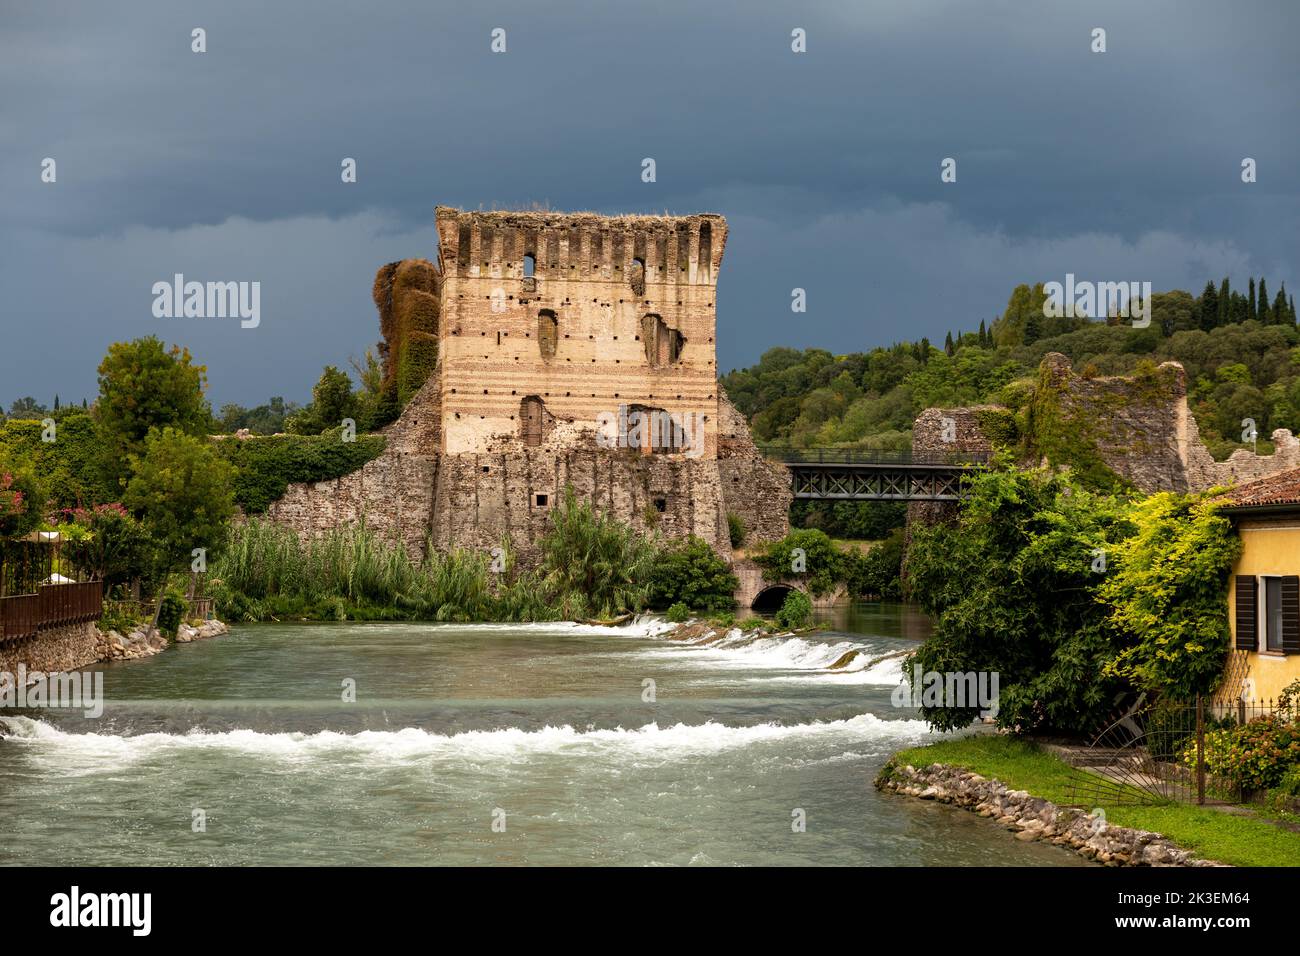 Borghetto Scaligeri Castello cascate e ponte in una giornata di forte nuvolosità nel villaggio di Valeggio sul Mincio a Verona. Foto Stock